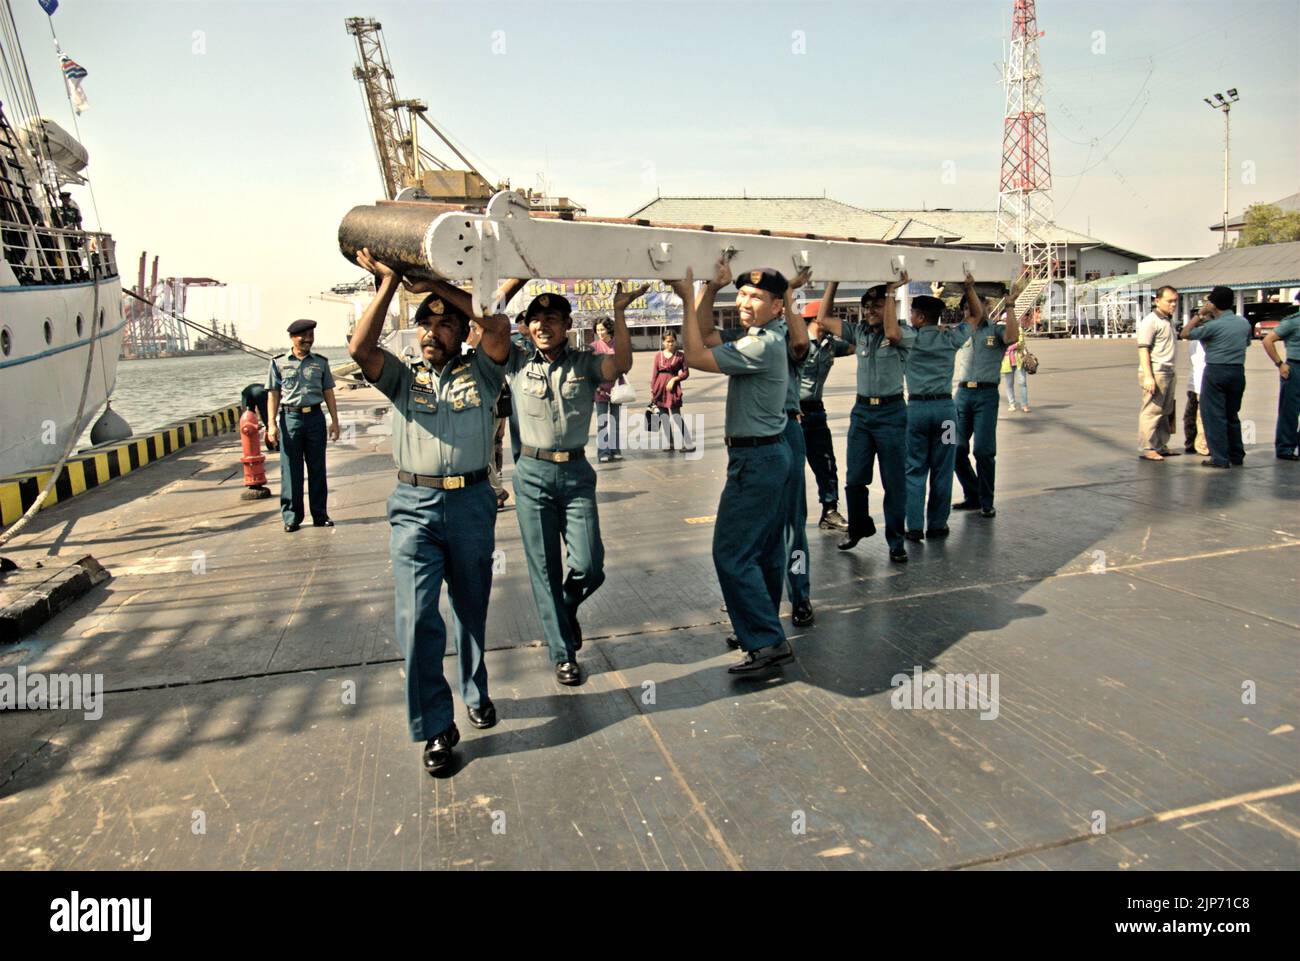 Des officiers de la marine indonésienne portant une échelle métallique se promenant sur la plate-forme du port, sur le côté de KRI Dewaruci (Dewa Ruci), un grand navire indonésien, lorsque la goélette de type barquentine est ouverte aux visiteurs publics au port de Kolinlamil (port de la marine) à Tanjung Priok, dans le nord de Jakarta, en Indonésie. Banque D'Images